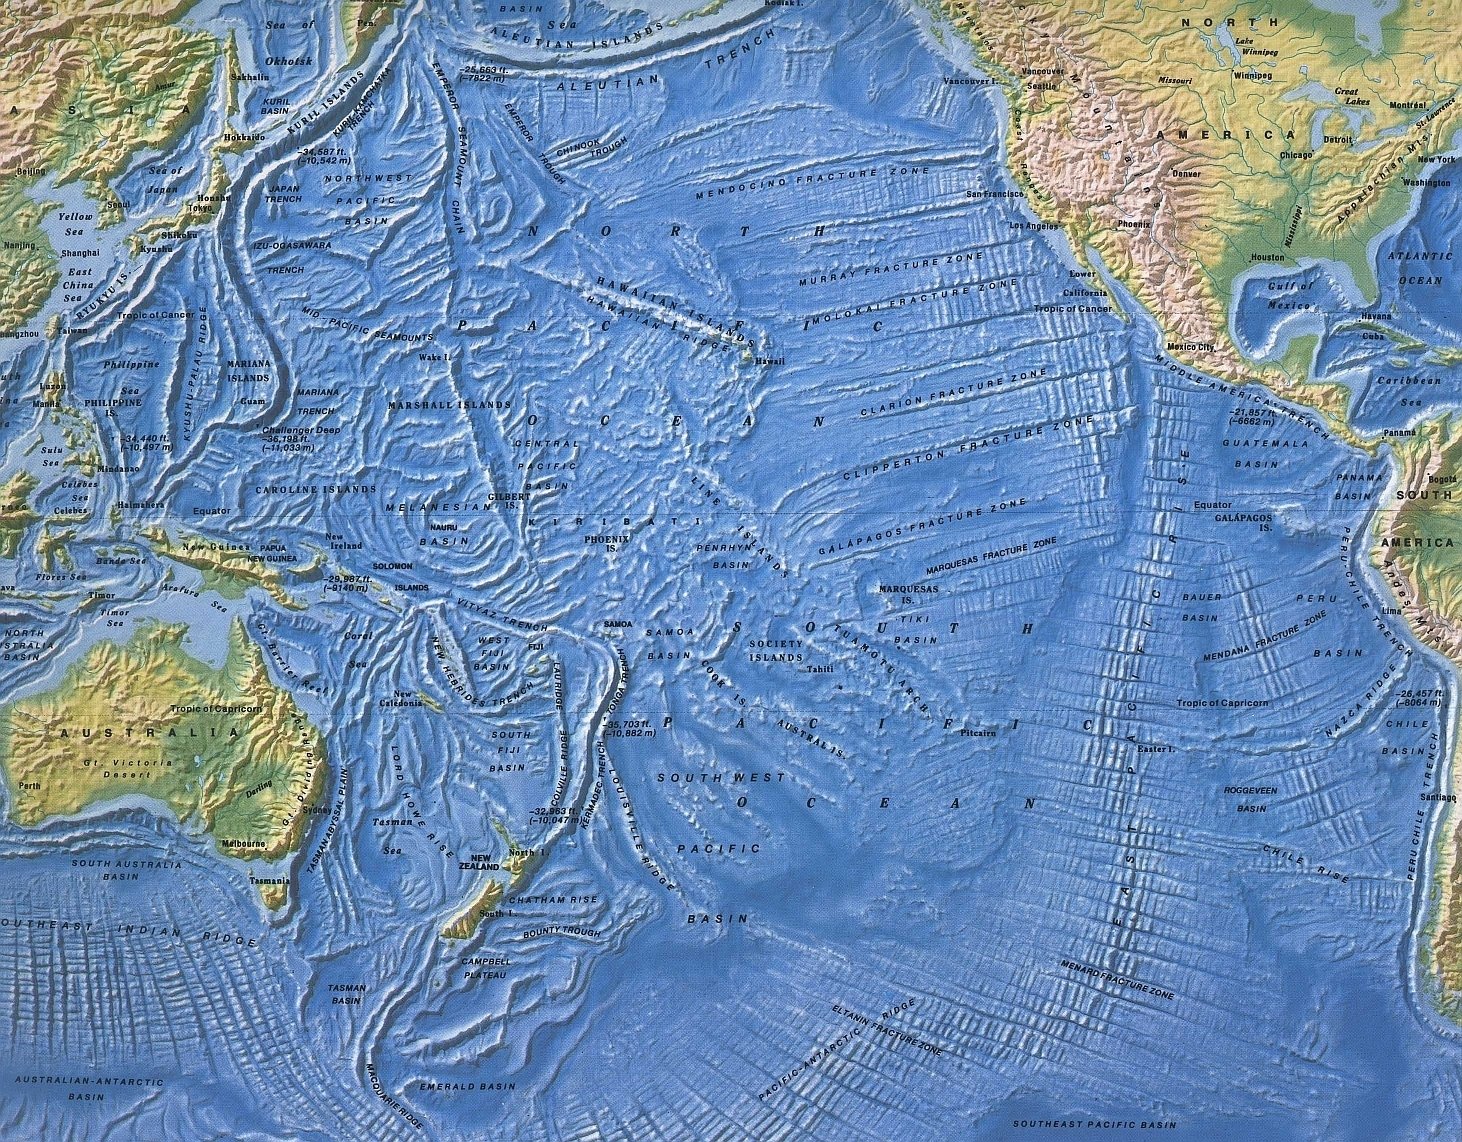 Тихий океан век. Карта рельефа Тихого океана. Карта рельефа дна Тихого океана. Рельеф дна Тихого океана. Рельеф дна океана Тихого океана карта.